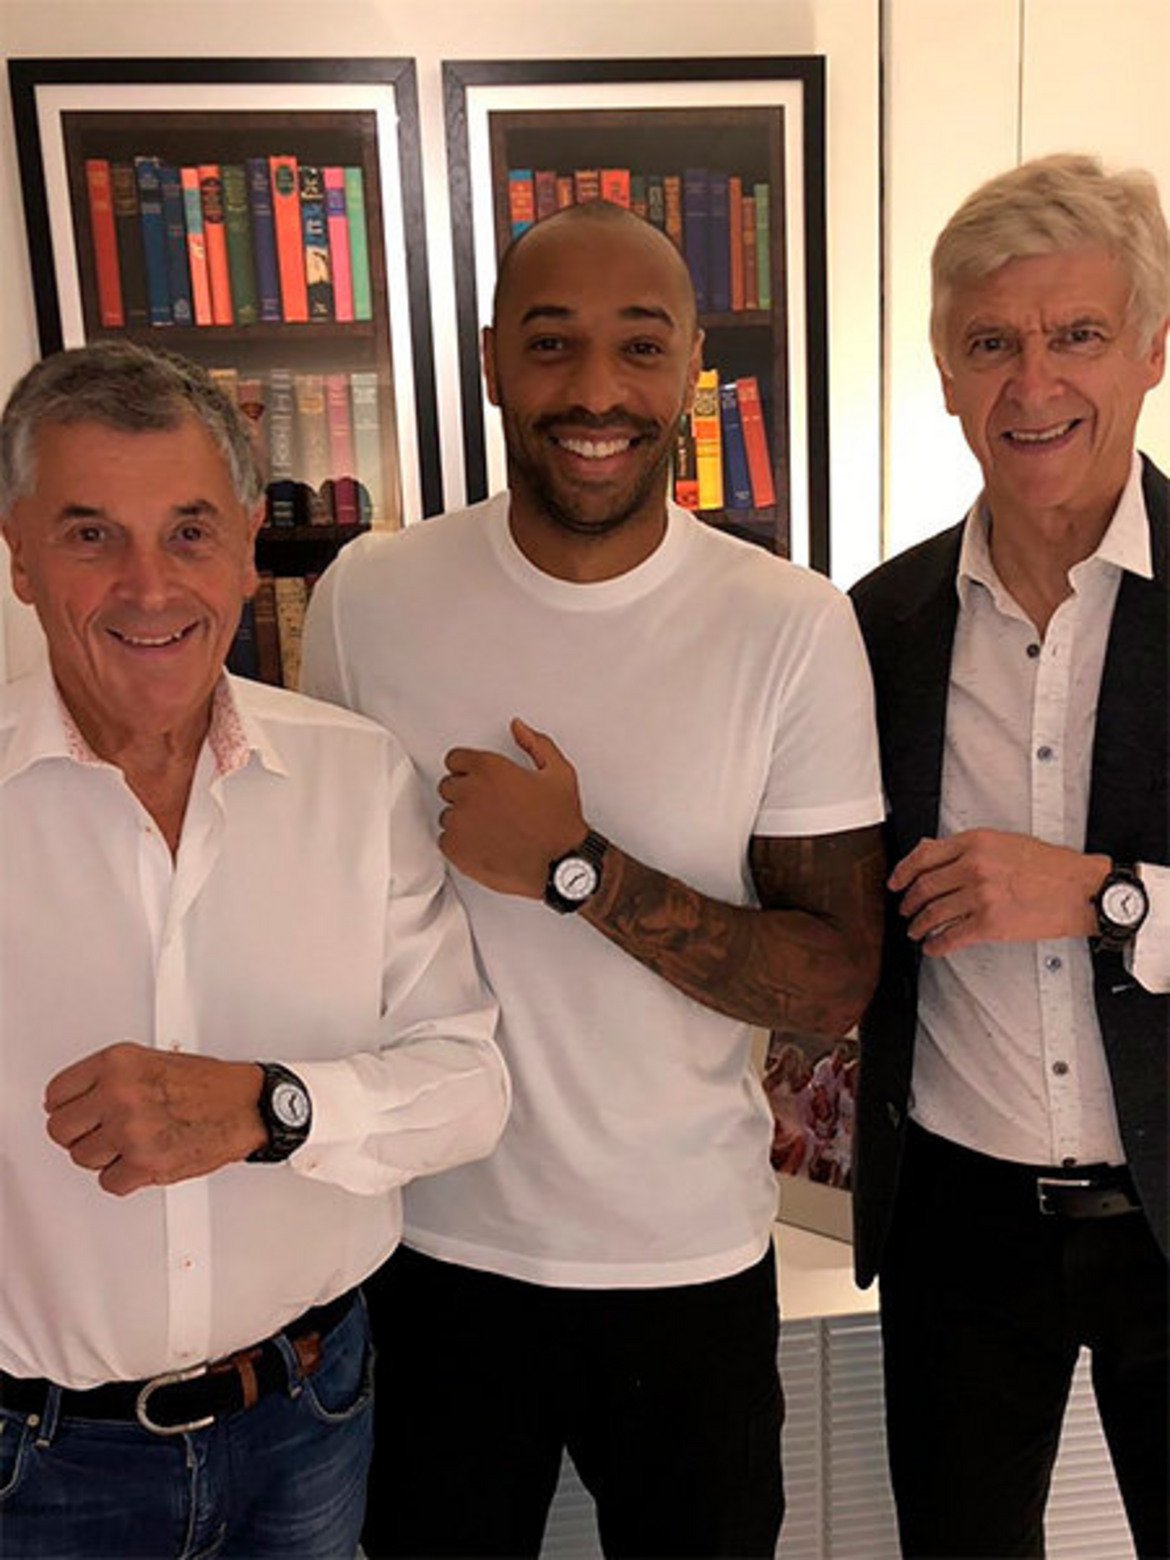 
От Арсенал почетоха с уникална серия часовници Венгер и други две легенди на клуба - Дейвид Дейн и Тиери Анри.